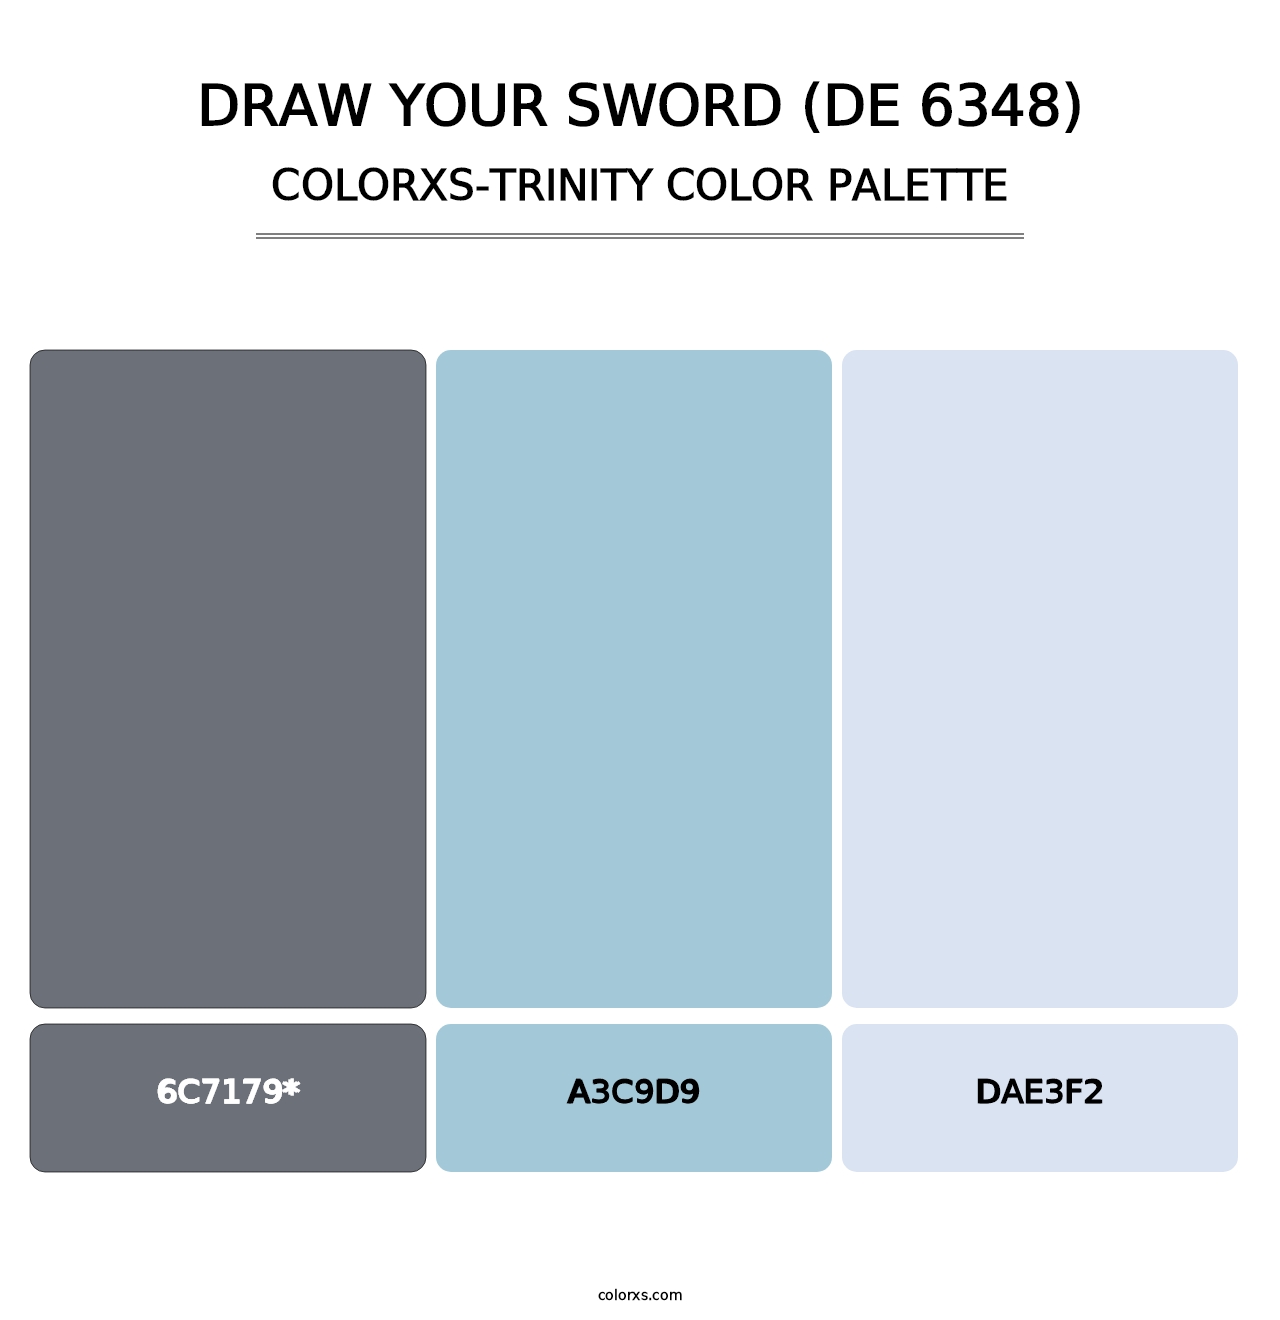 Draw Your Sword (DE 6348) - Colorxs Trinity Palette